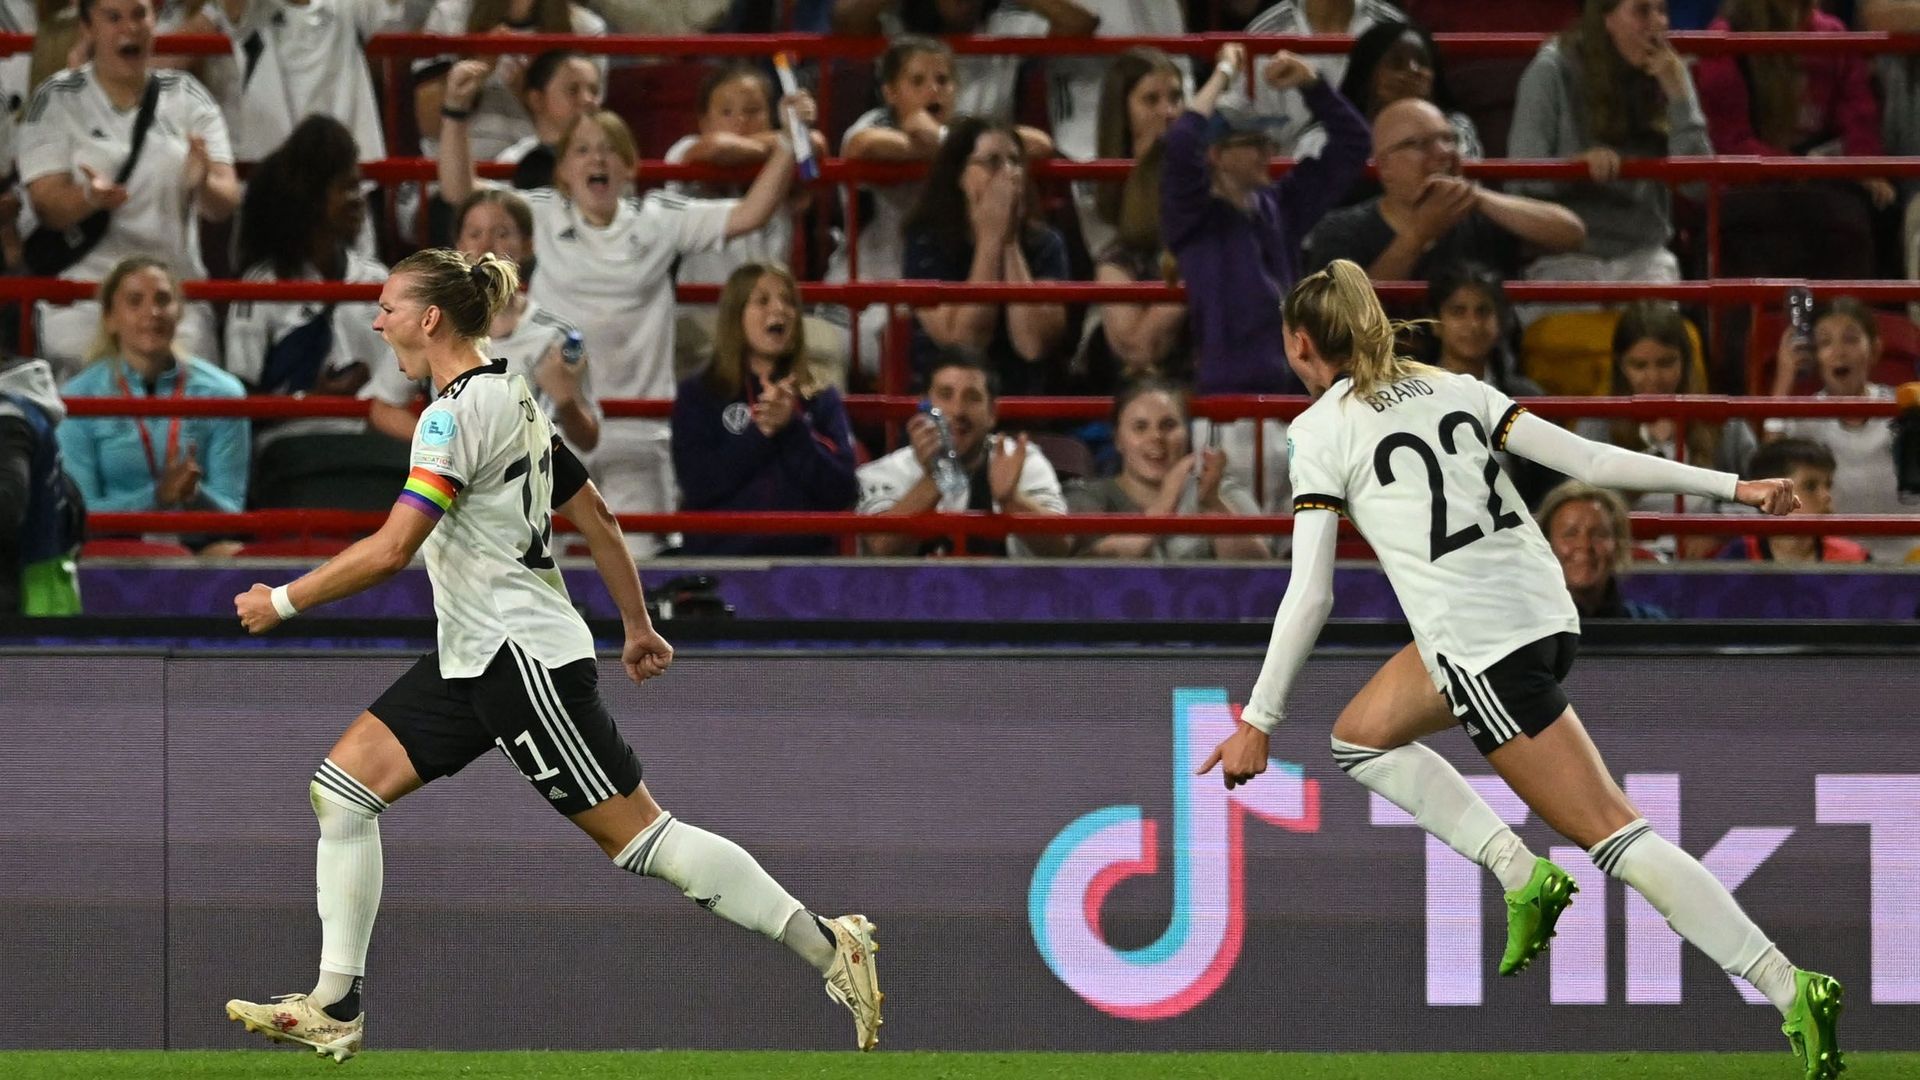 L’Allemagne est qualifiée pour les demi-finales de l’Euro après avoir battu l’Autriche 2-0.